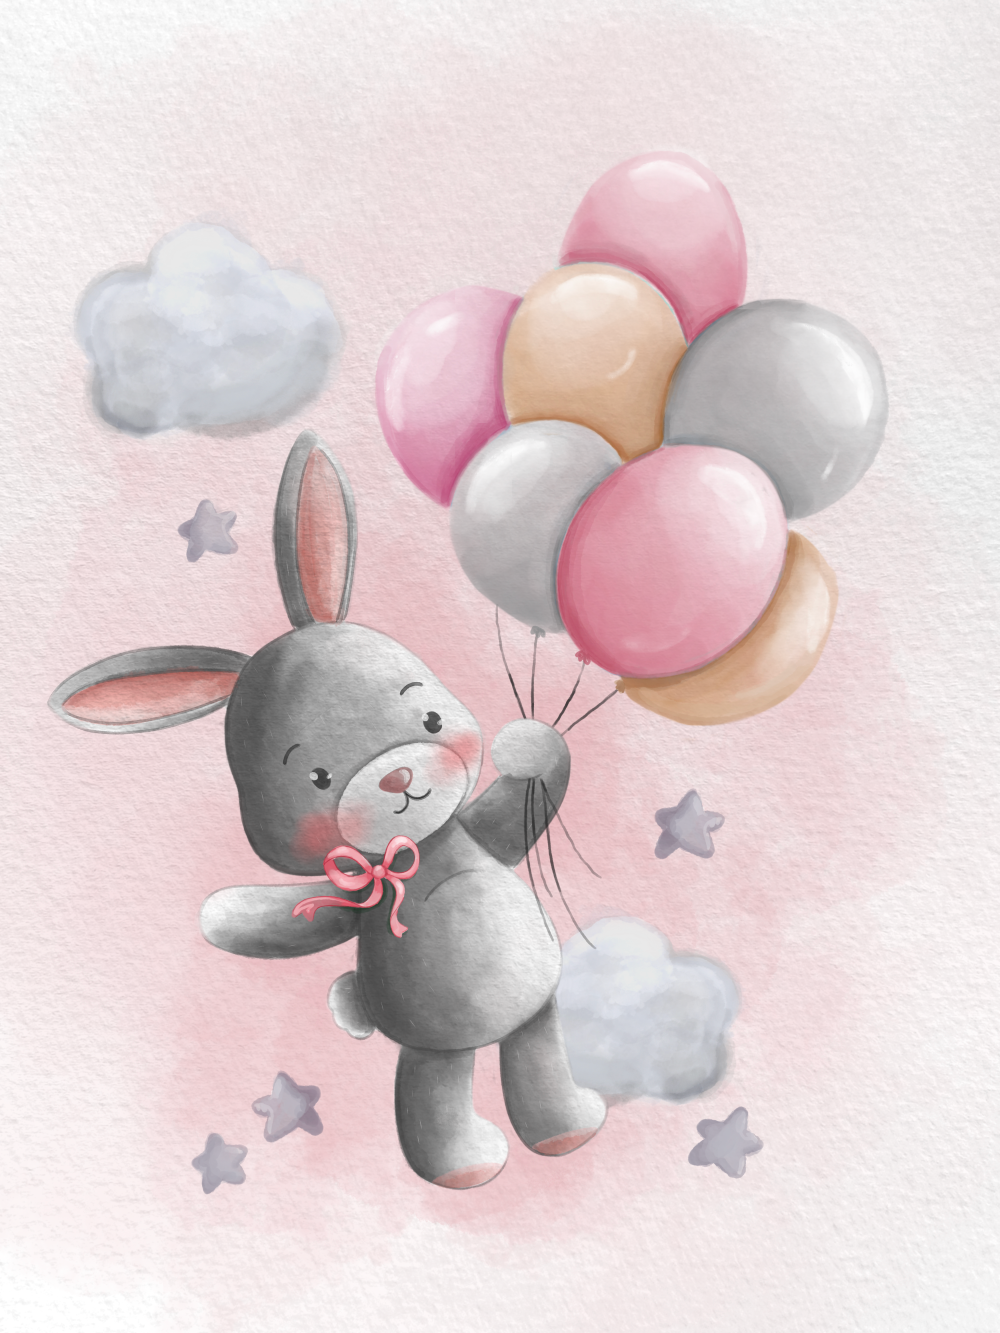 Obraz nebo plakát králíček s růžovými balónky a mašlí a pozadím jako dárek do dětského pokoje nebo pro narození dítěte | ZivotniOkamziky.cz